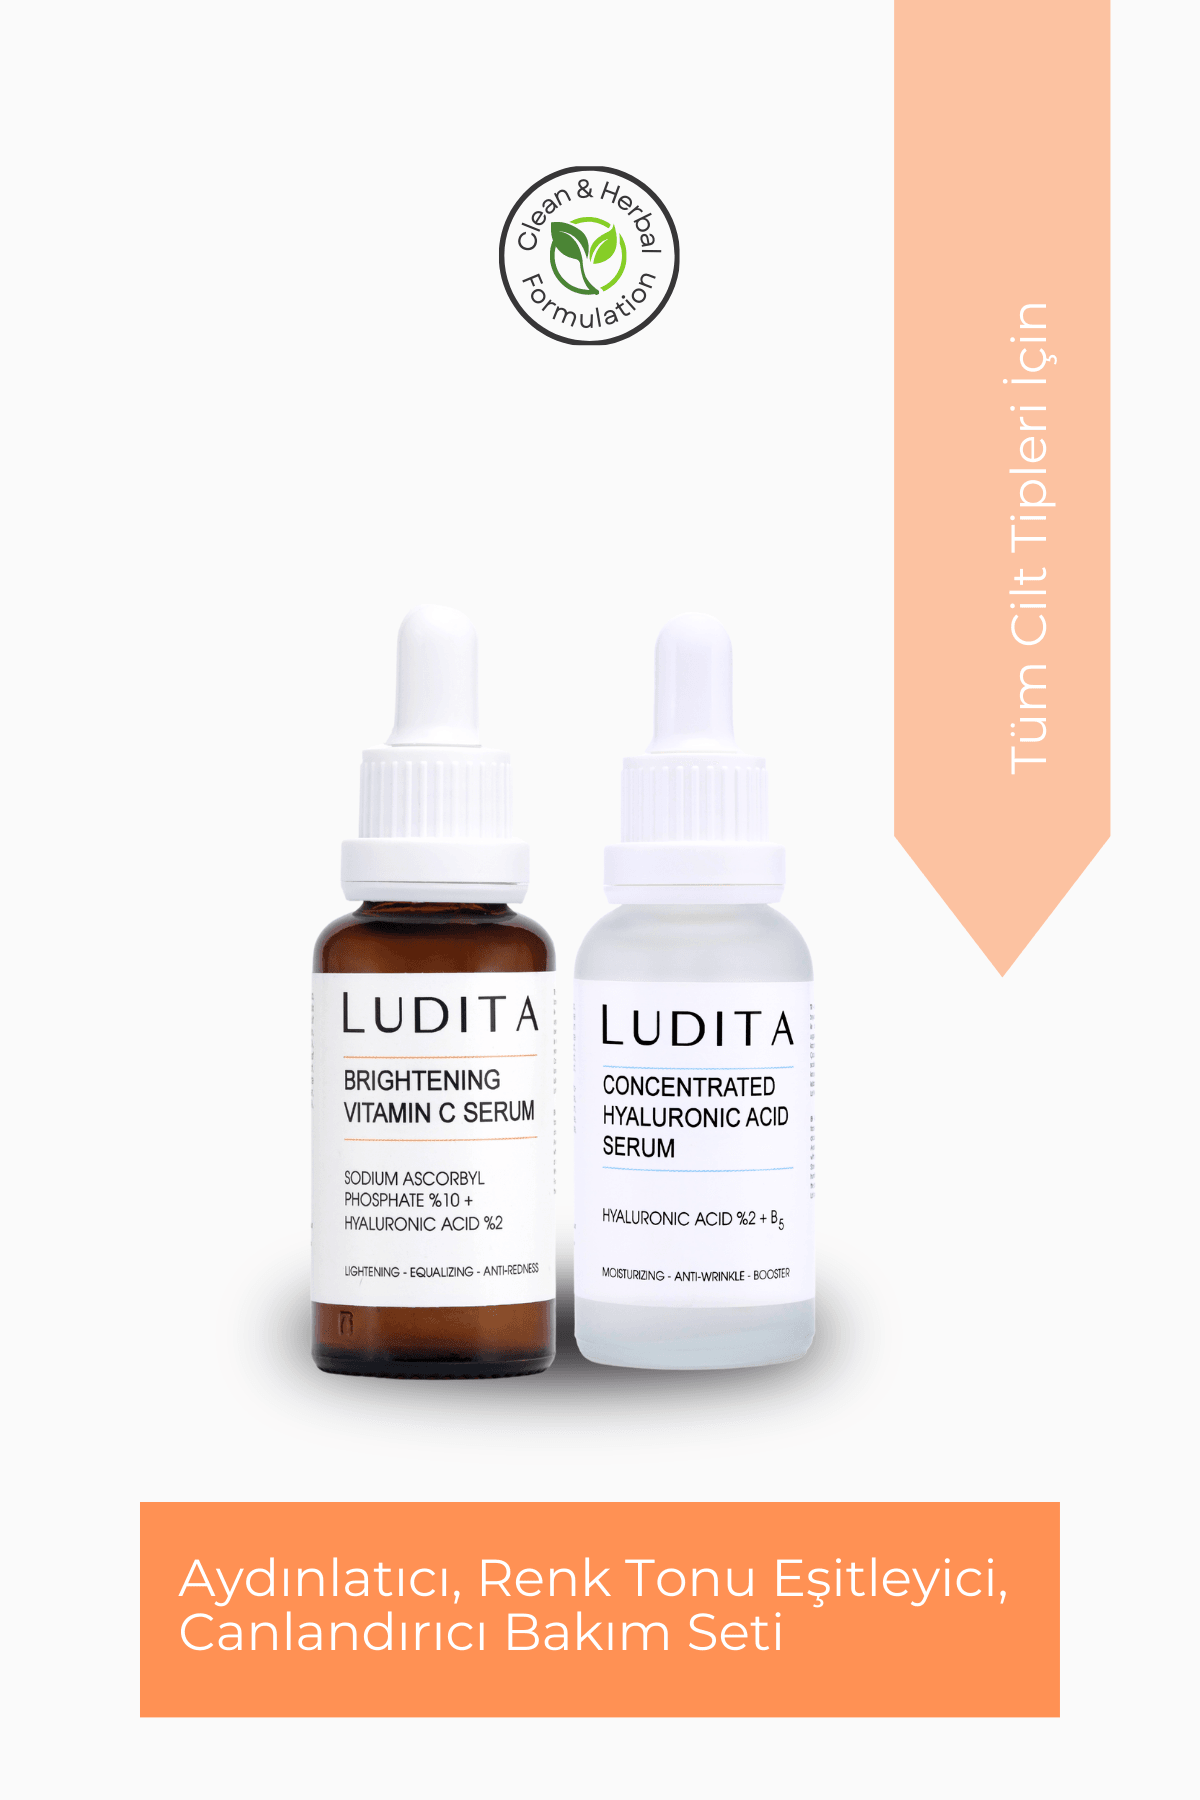 The Ludita Illuminating, Skin Tone-Equalizing, Revitalizing Skincare Set